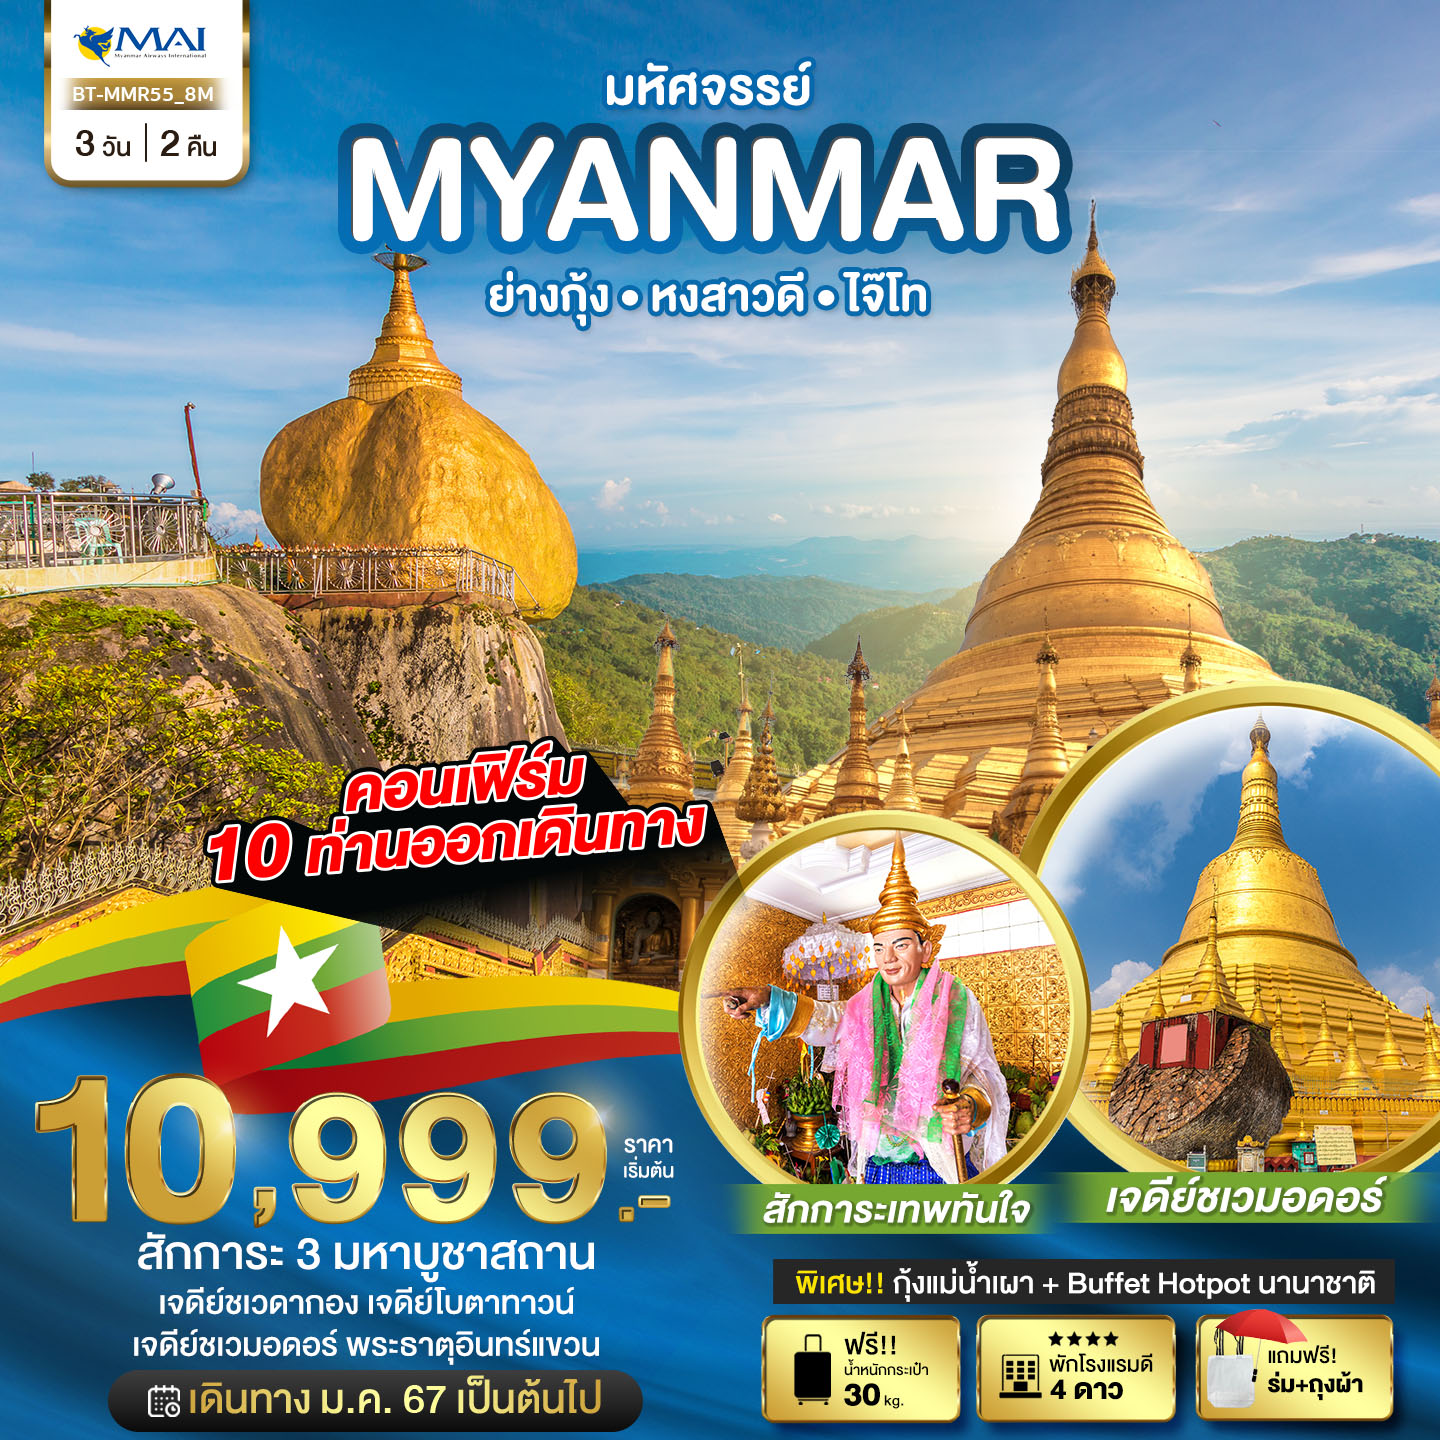 มหัศจรรย์ MYANMAR ย่างกุ้ง หงสา ไจ๊โท 3 วัน 2 คืน by MYANMAR AIRWAYS